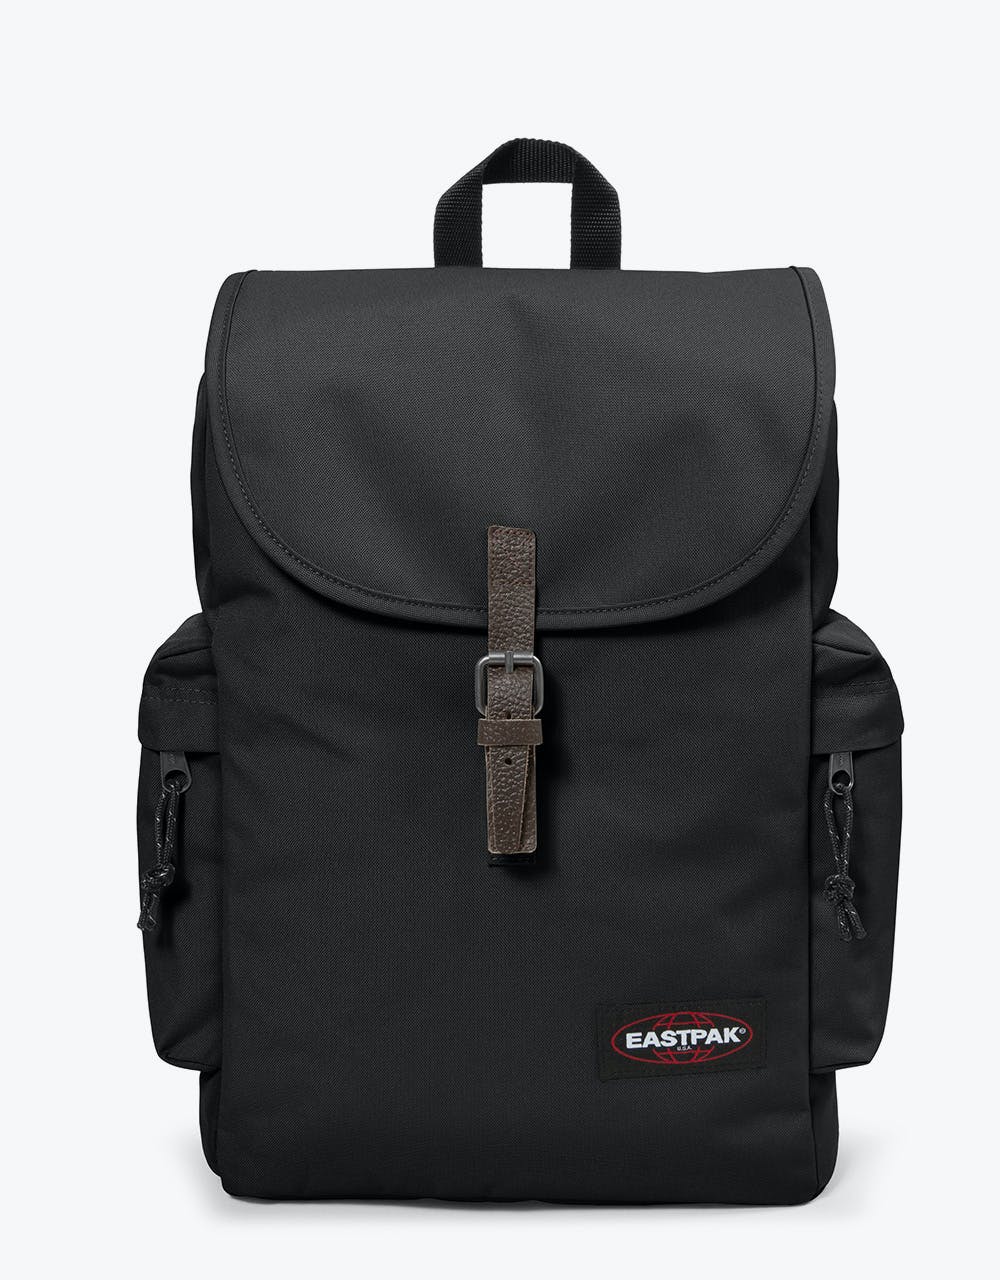 Eastpak Austin Backpack - Black